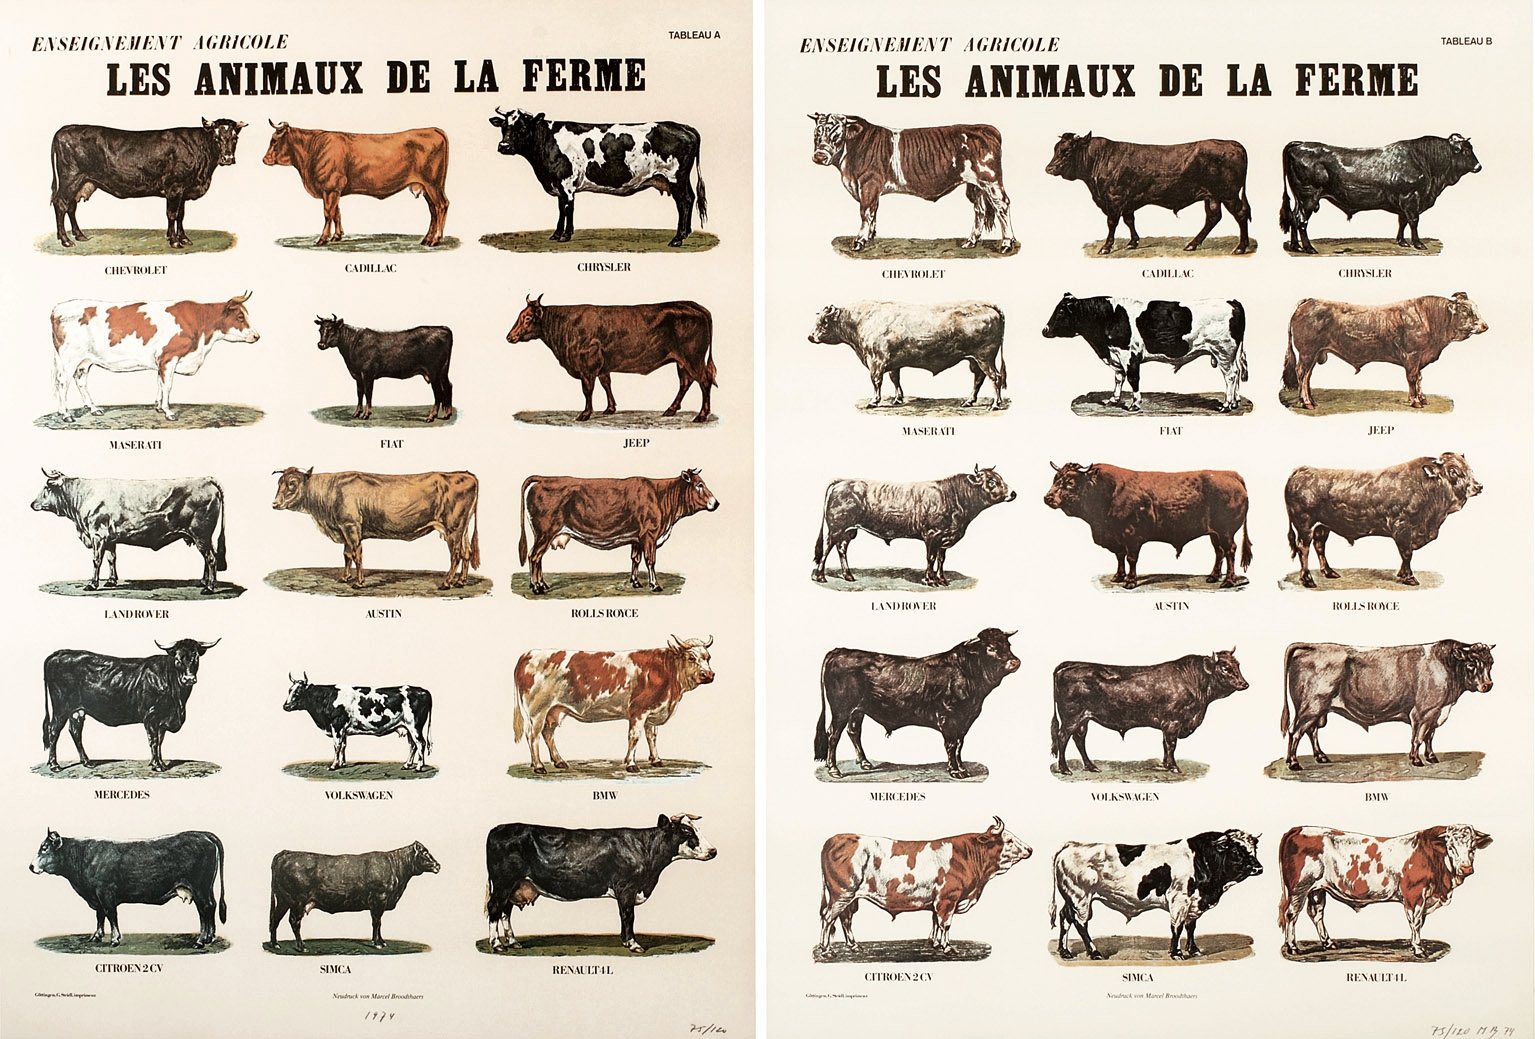  Marcel Broodthaers,  Les animaux de la ferme , 1974, Two sheets in offset colour print Schoeller-Parole paper, Edition of 20, 82 x 60.3cm 